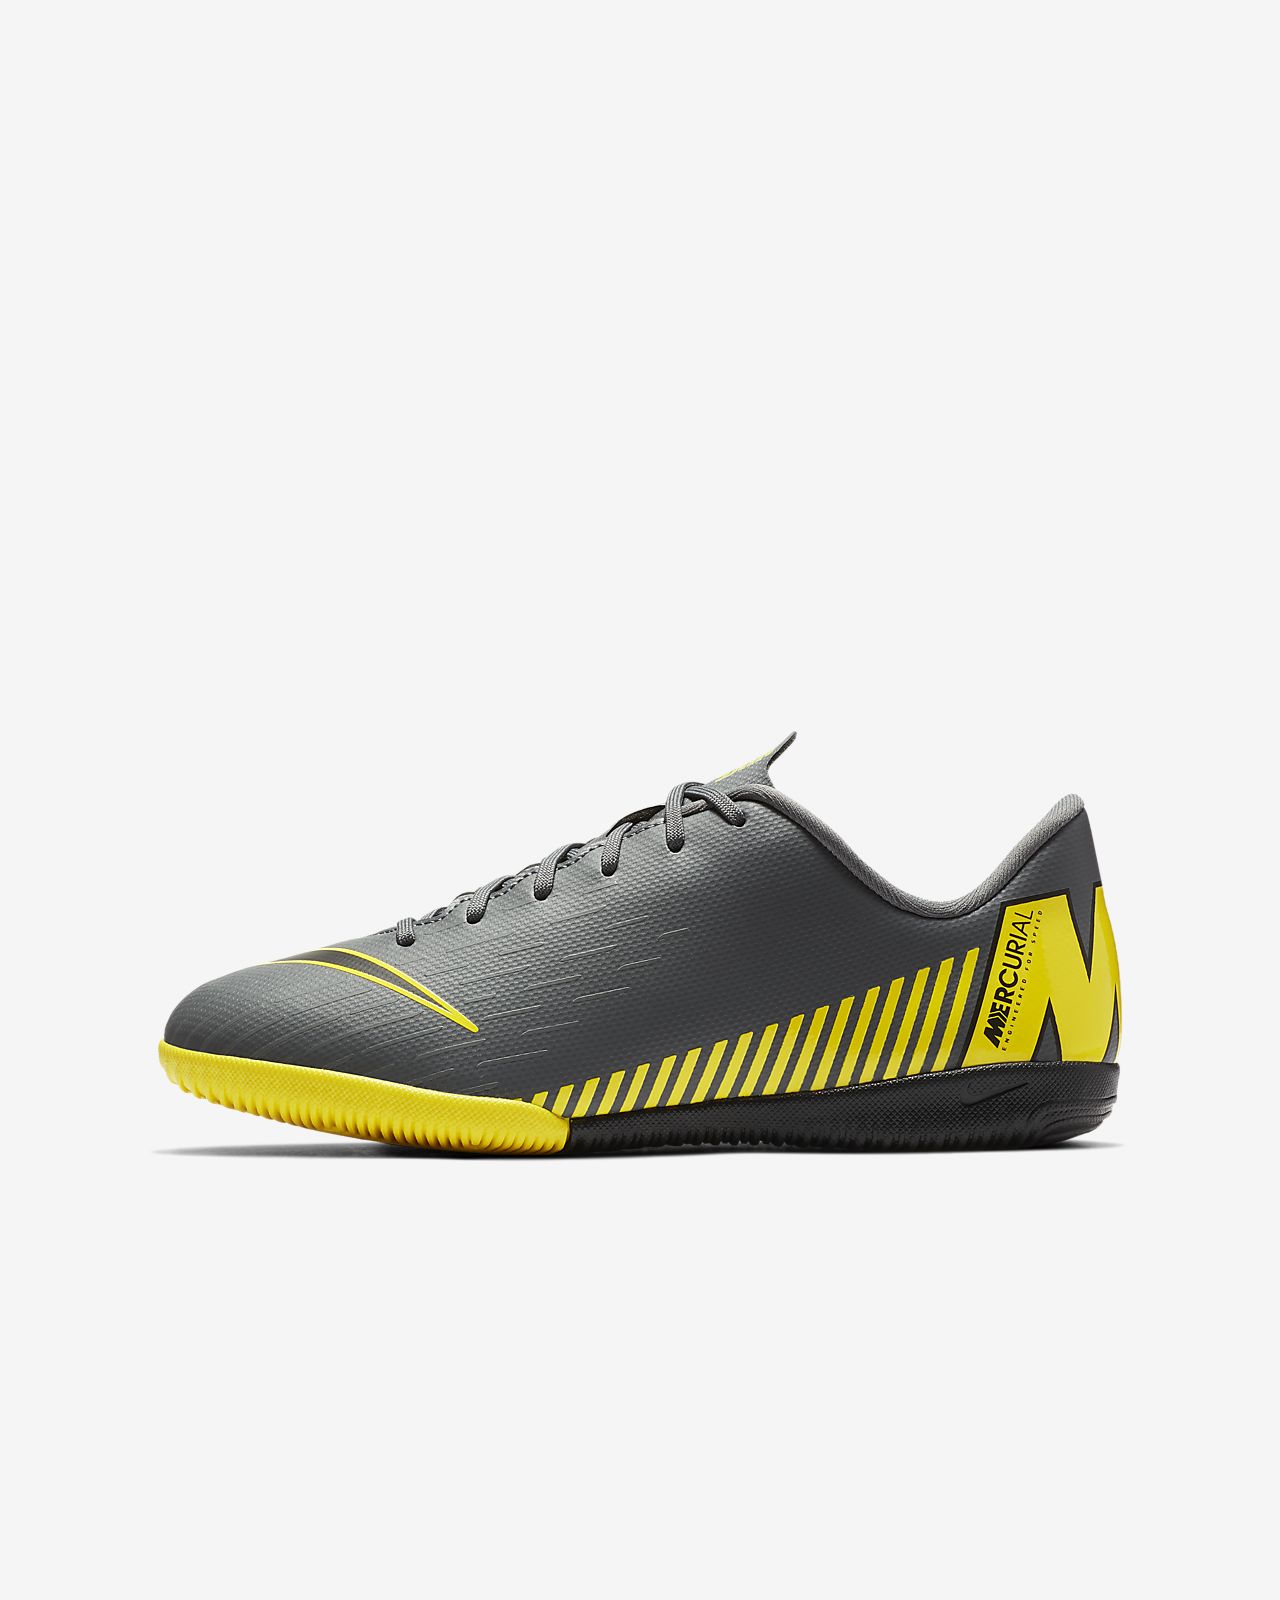 Botines Nike Mercurial Vapor Flyknit Ultra Botines Nike para